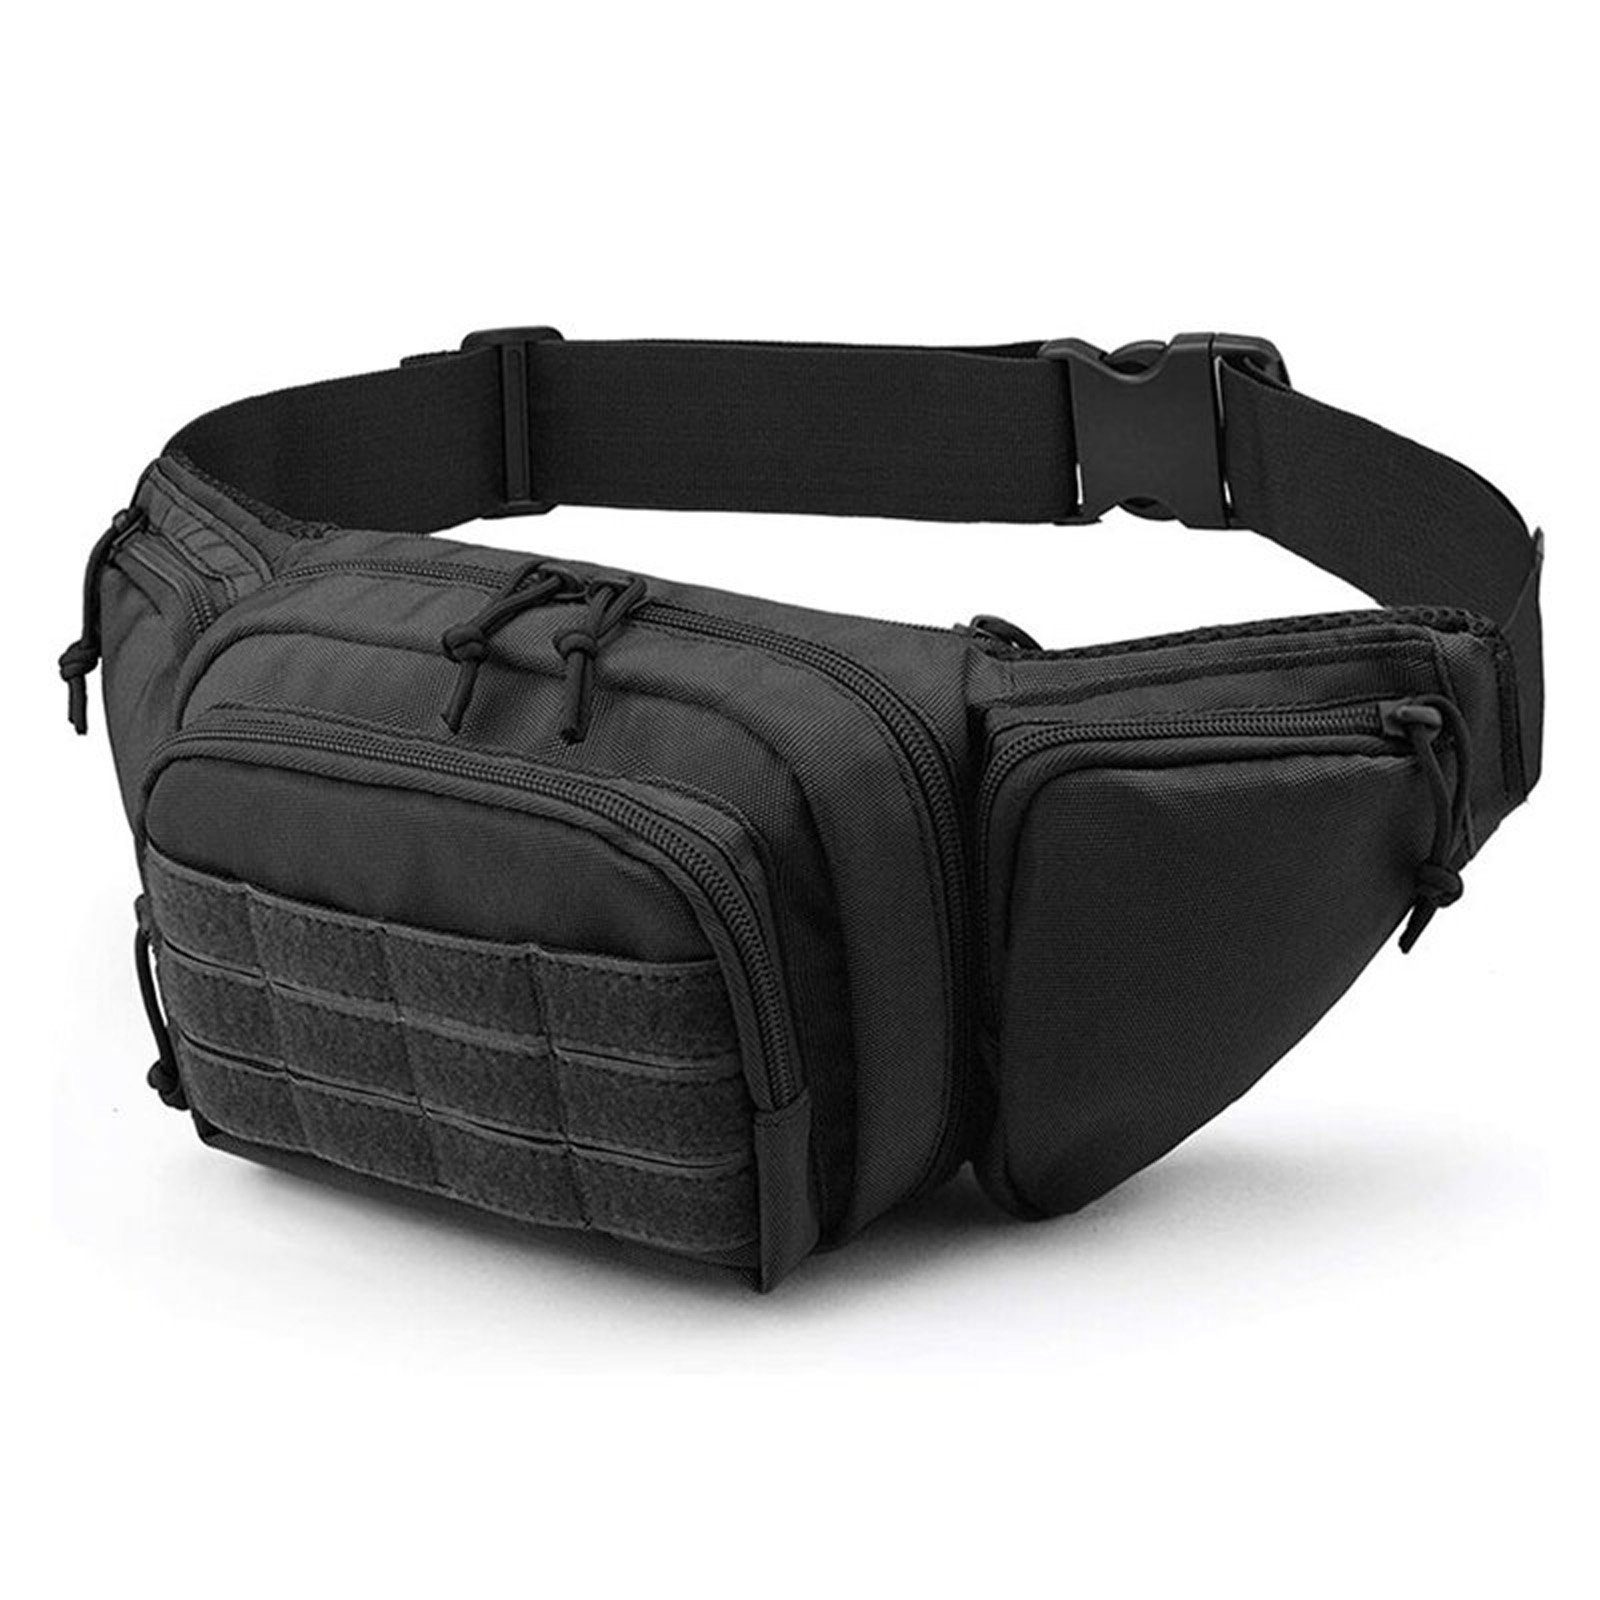 Outdoor Tactical Gürteltasche Bauchtasche Hüfttasche Bauch Tasche Bag für Reise 